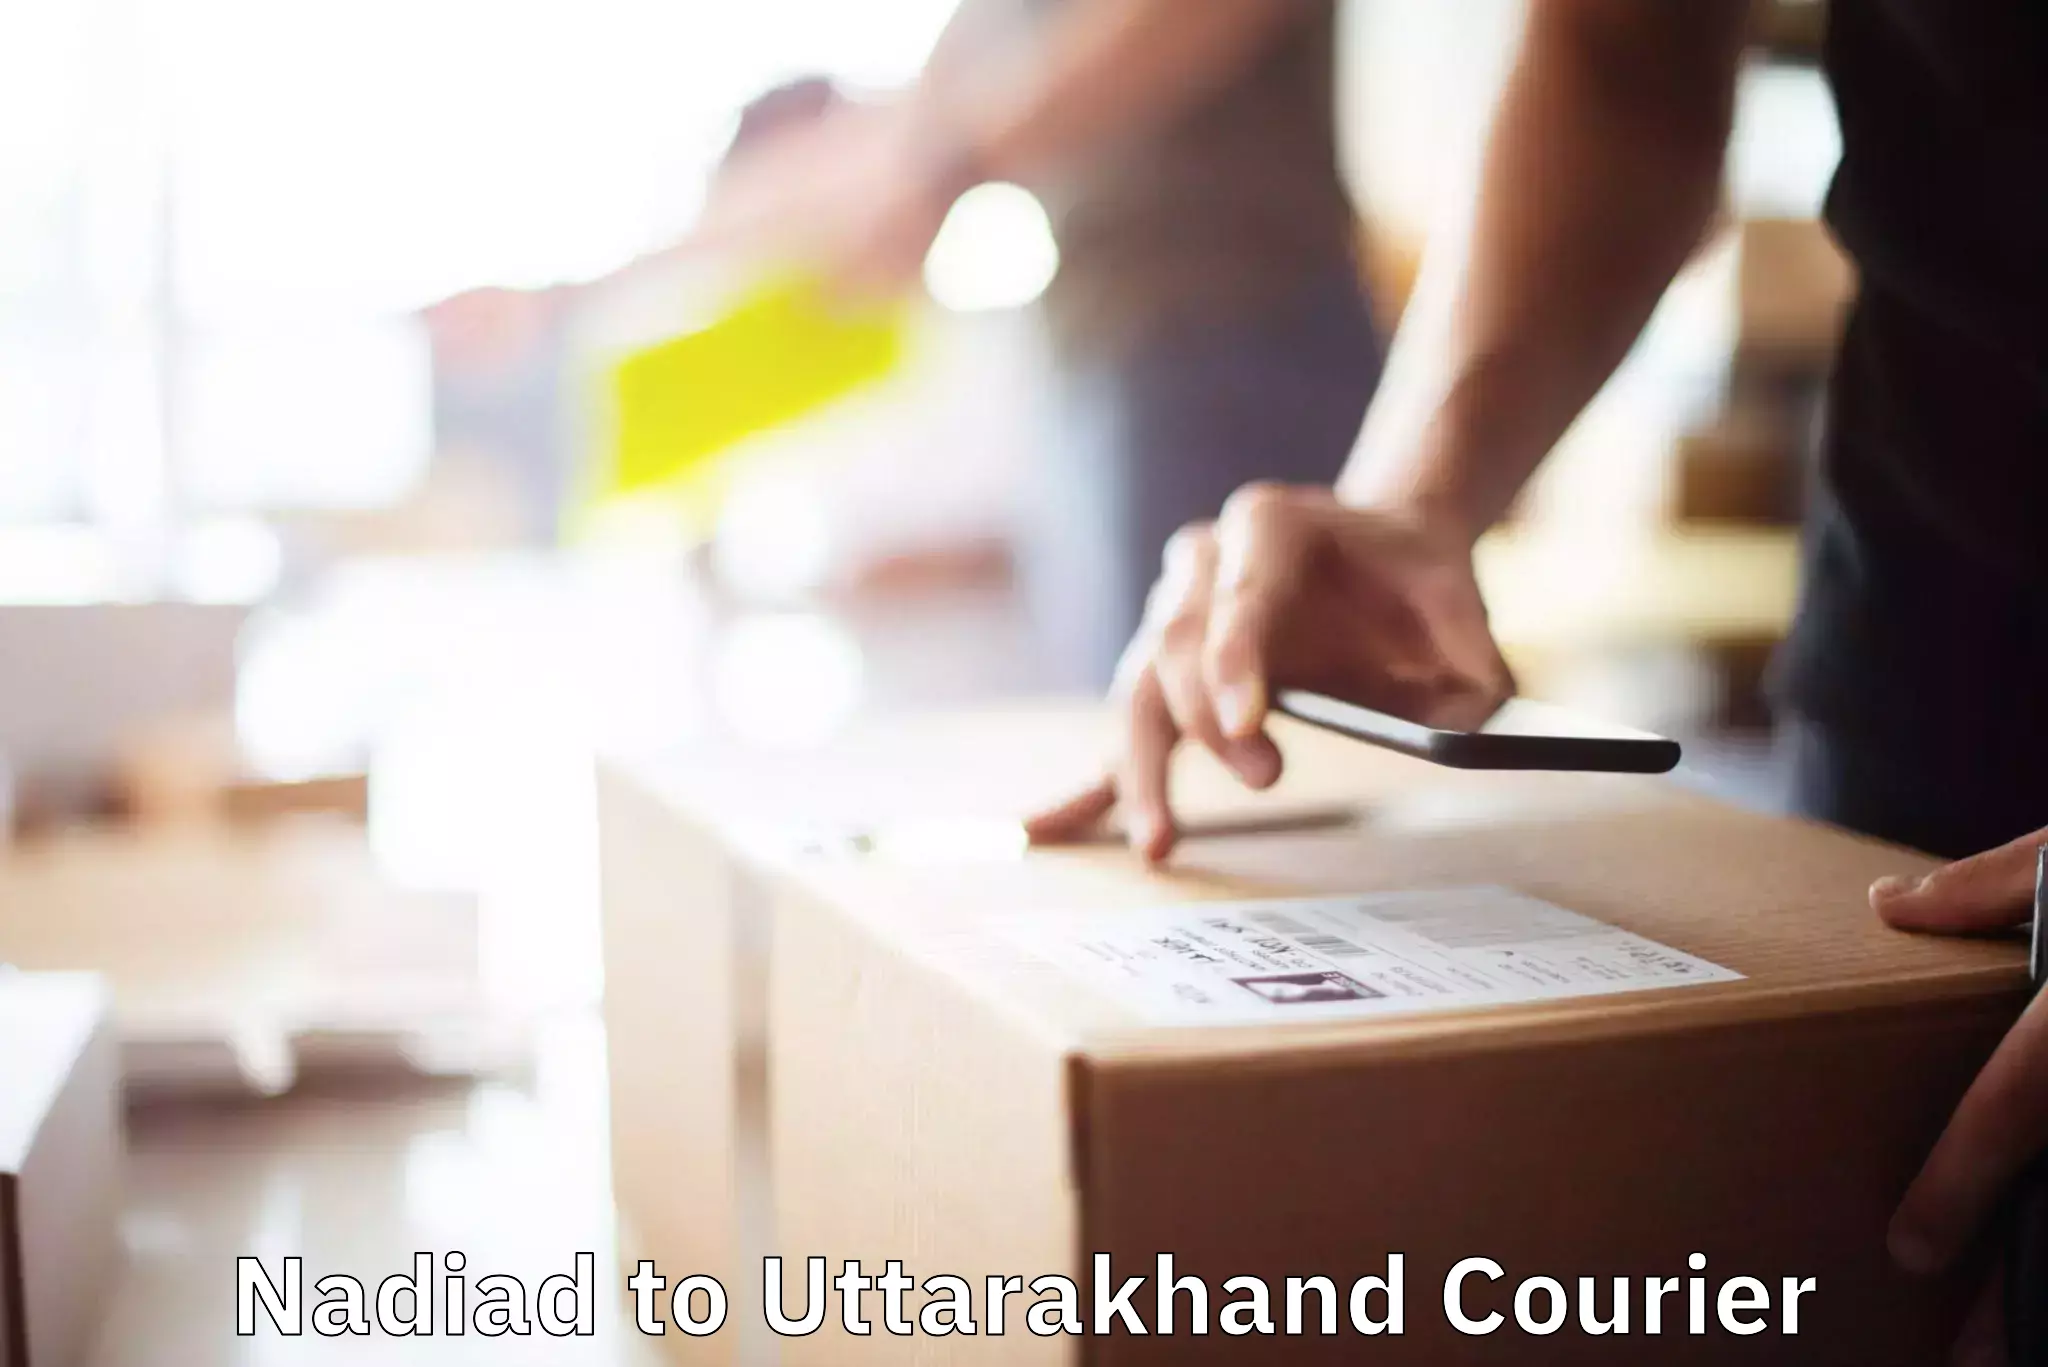 Nationwide moving services Nadiad to Uttarkashi